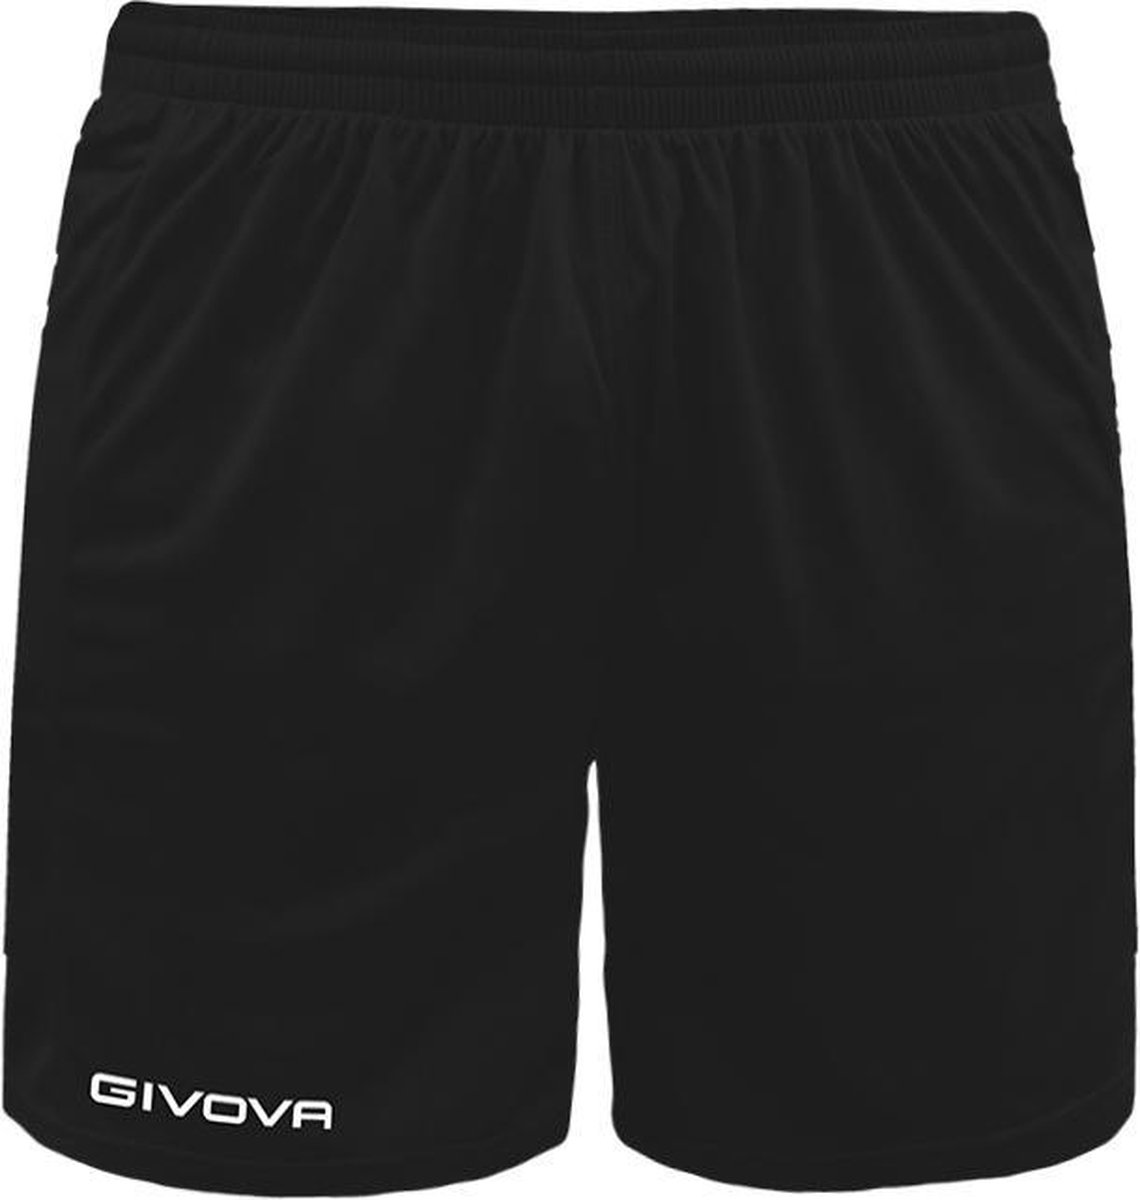 Short Givova Capo, P018, korte broek zwart, maat L, geborduurd logo